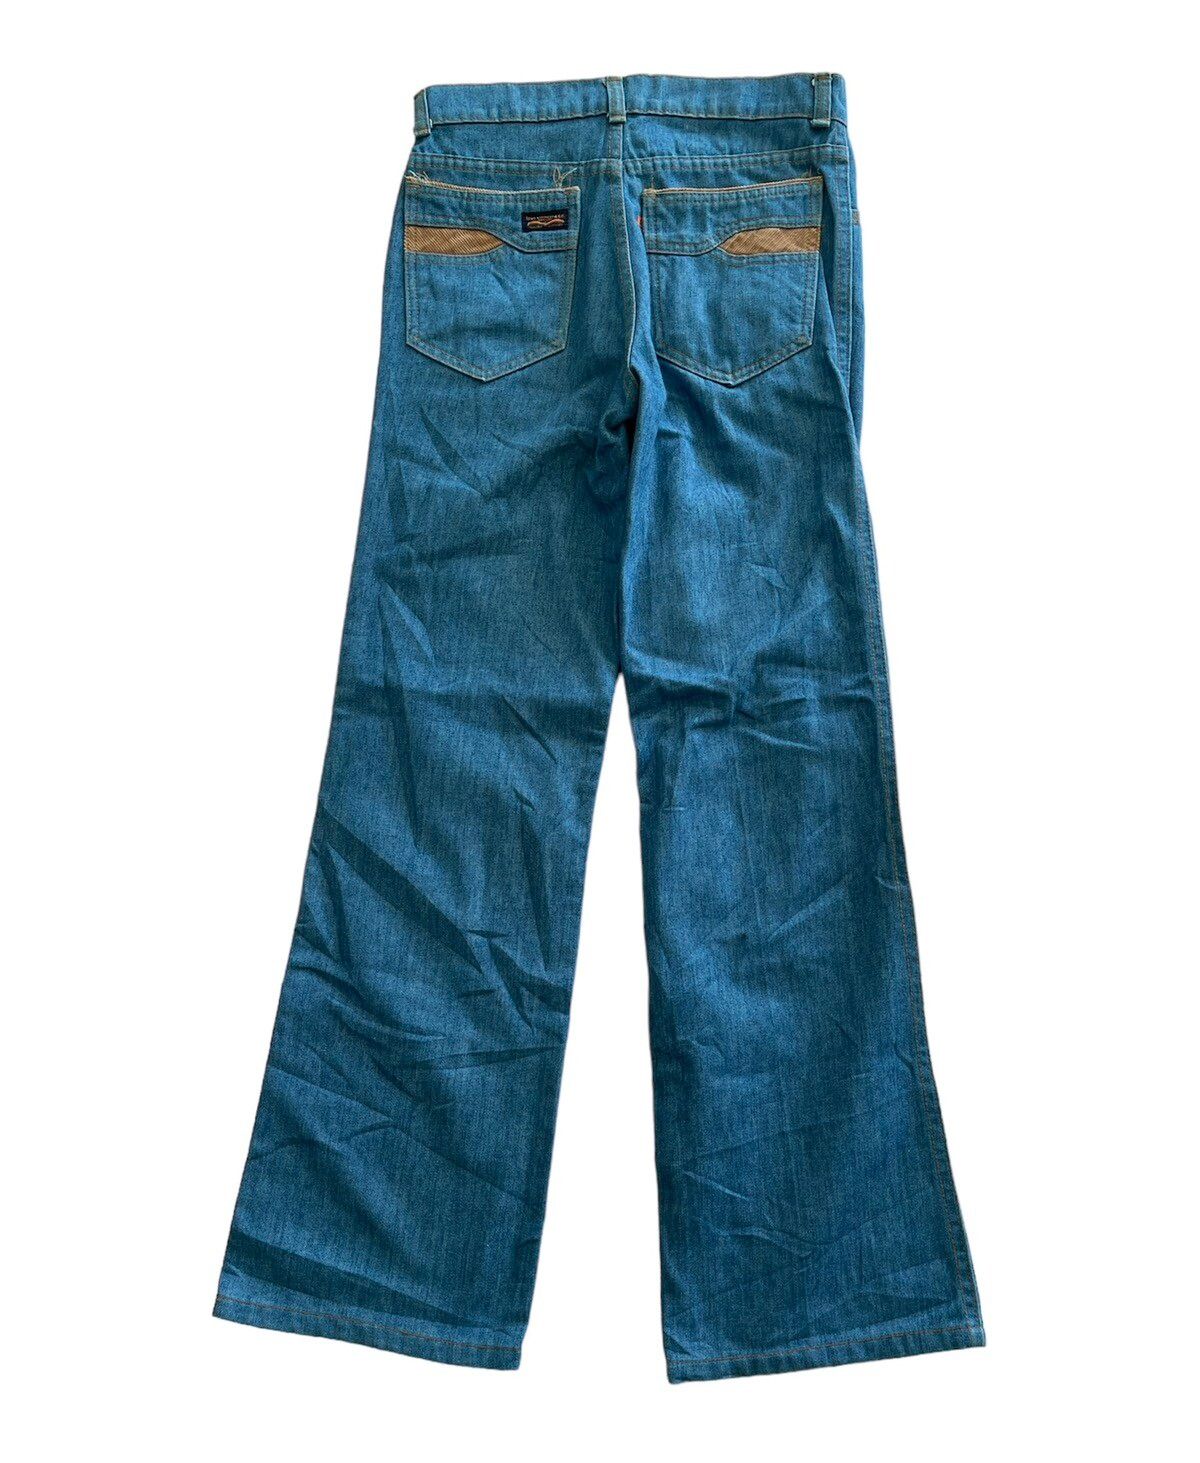 Vintage Levis orange tab 70s Flare Jeans - 2